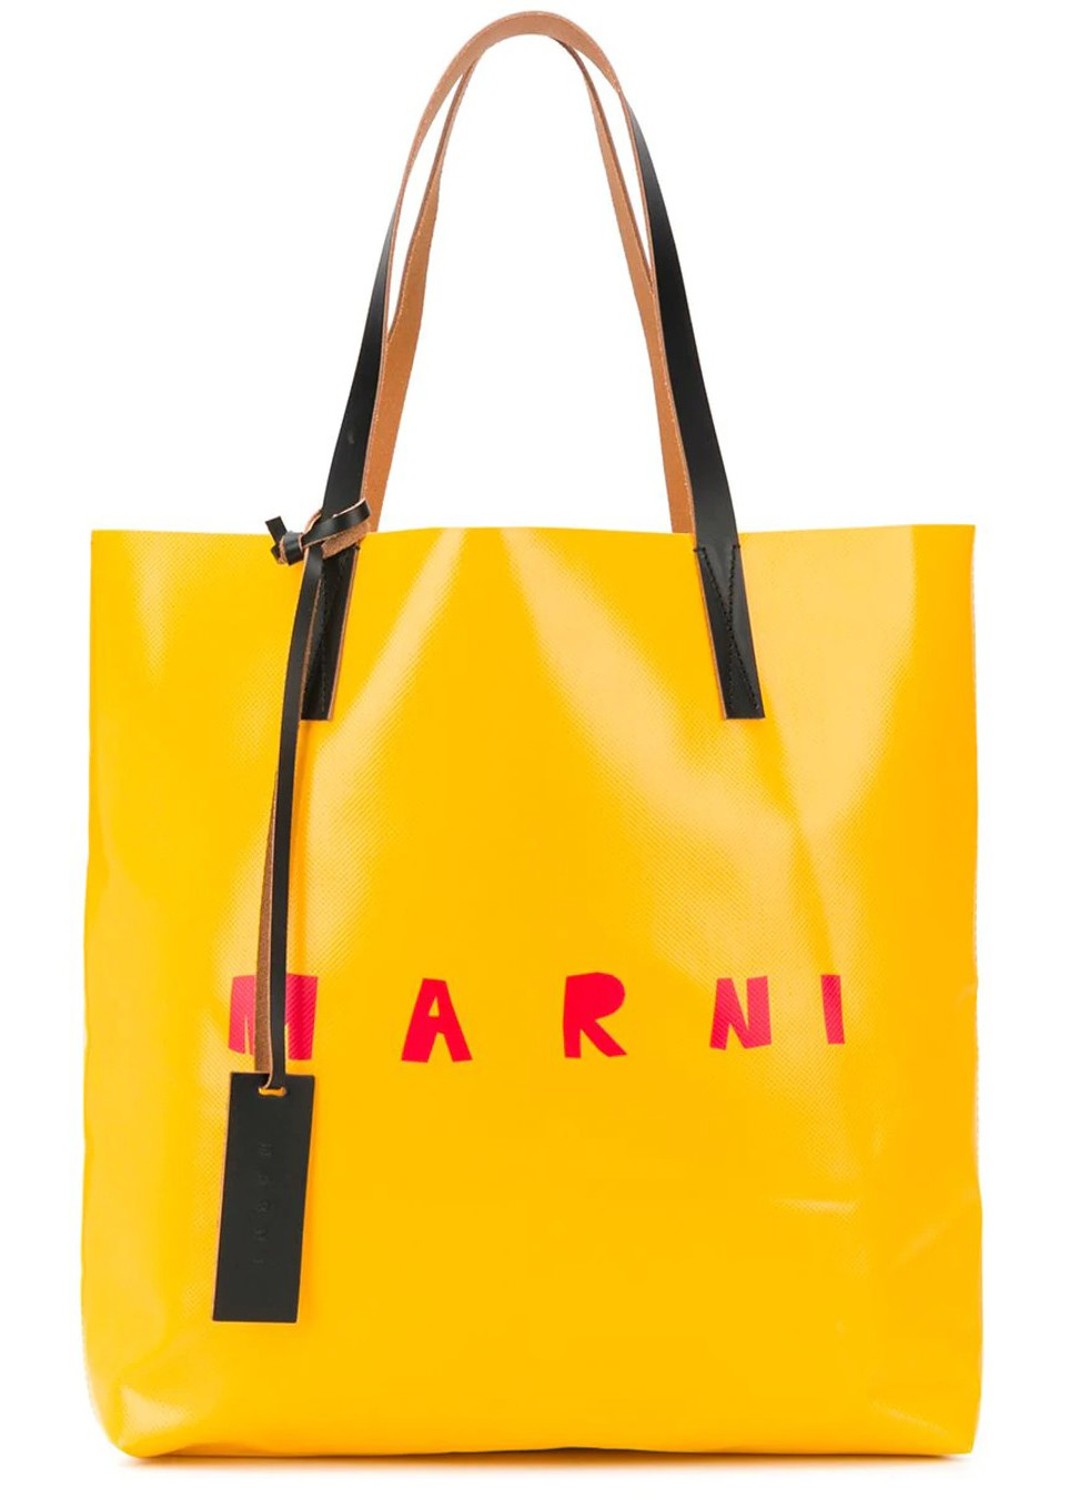 shop Marni Sales Borse: Borse Marni, modello shopping, manici in pelle, gialla e beige, logo di fronte.

Composizione: 90% poliestere, 10% pelle.
Dimensione: L 36 x A 36 x P 8 cm.  number 2008